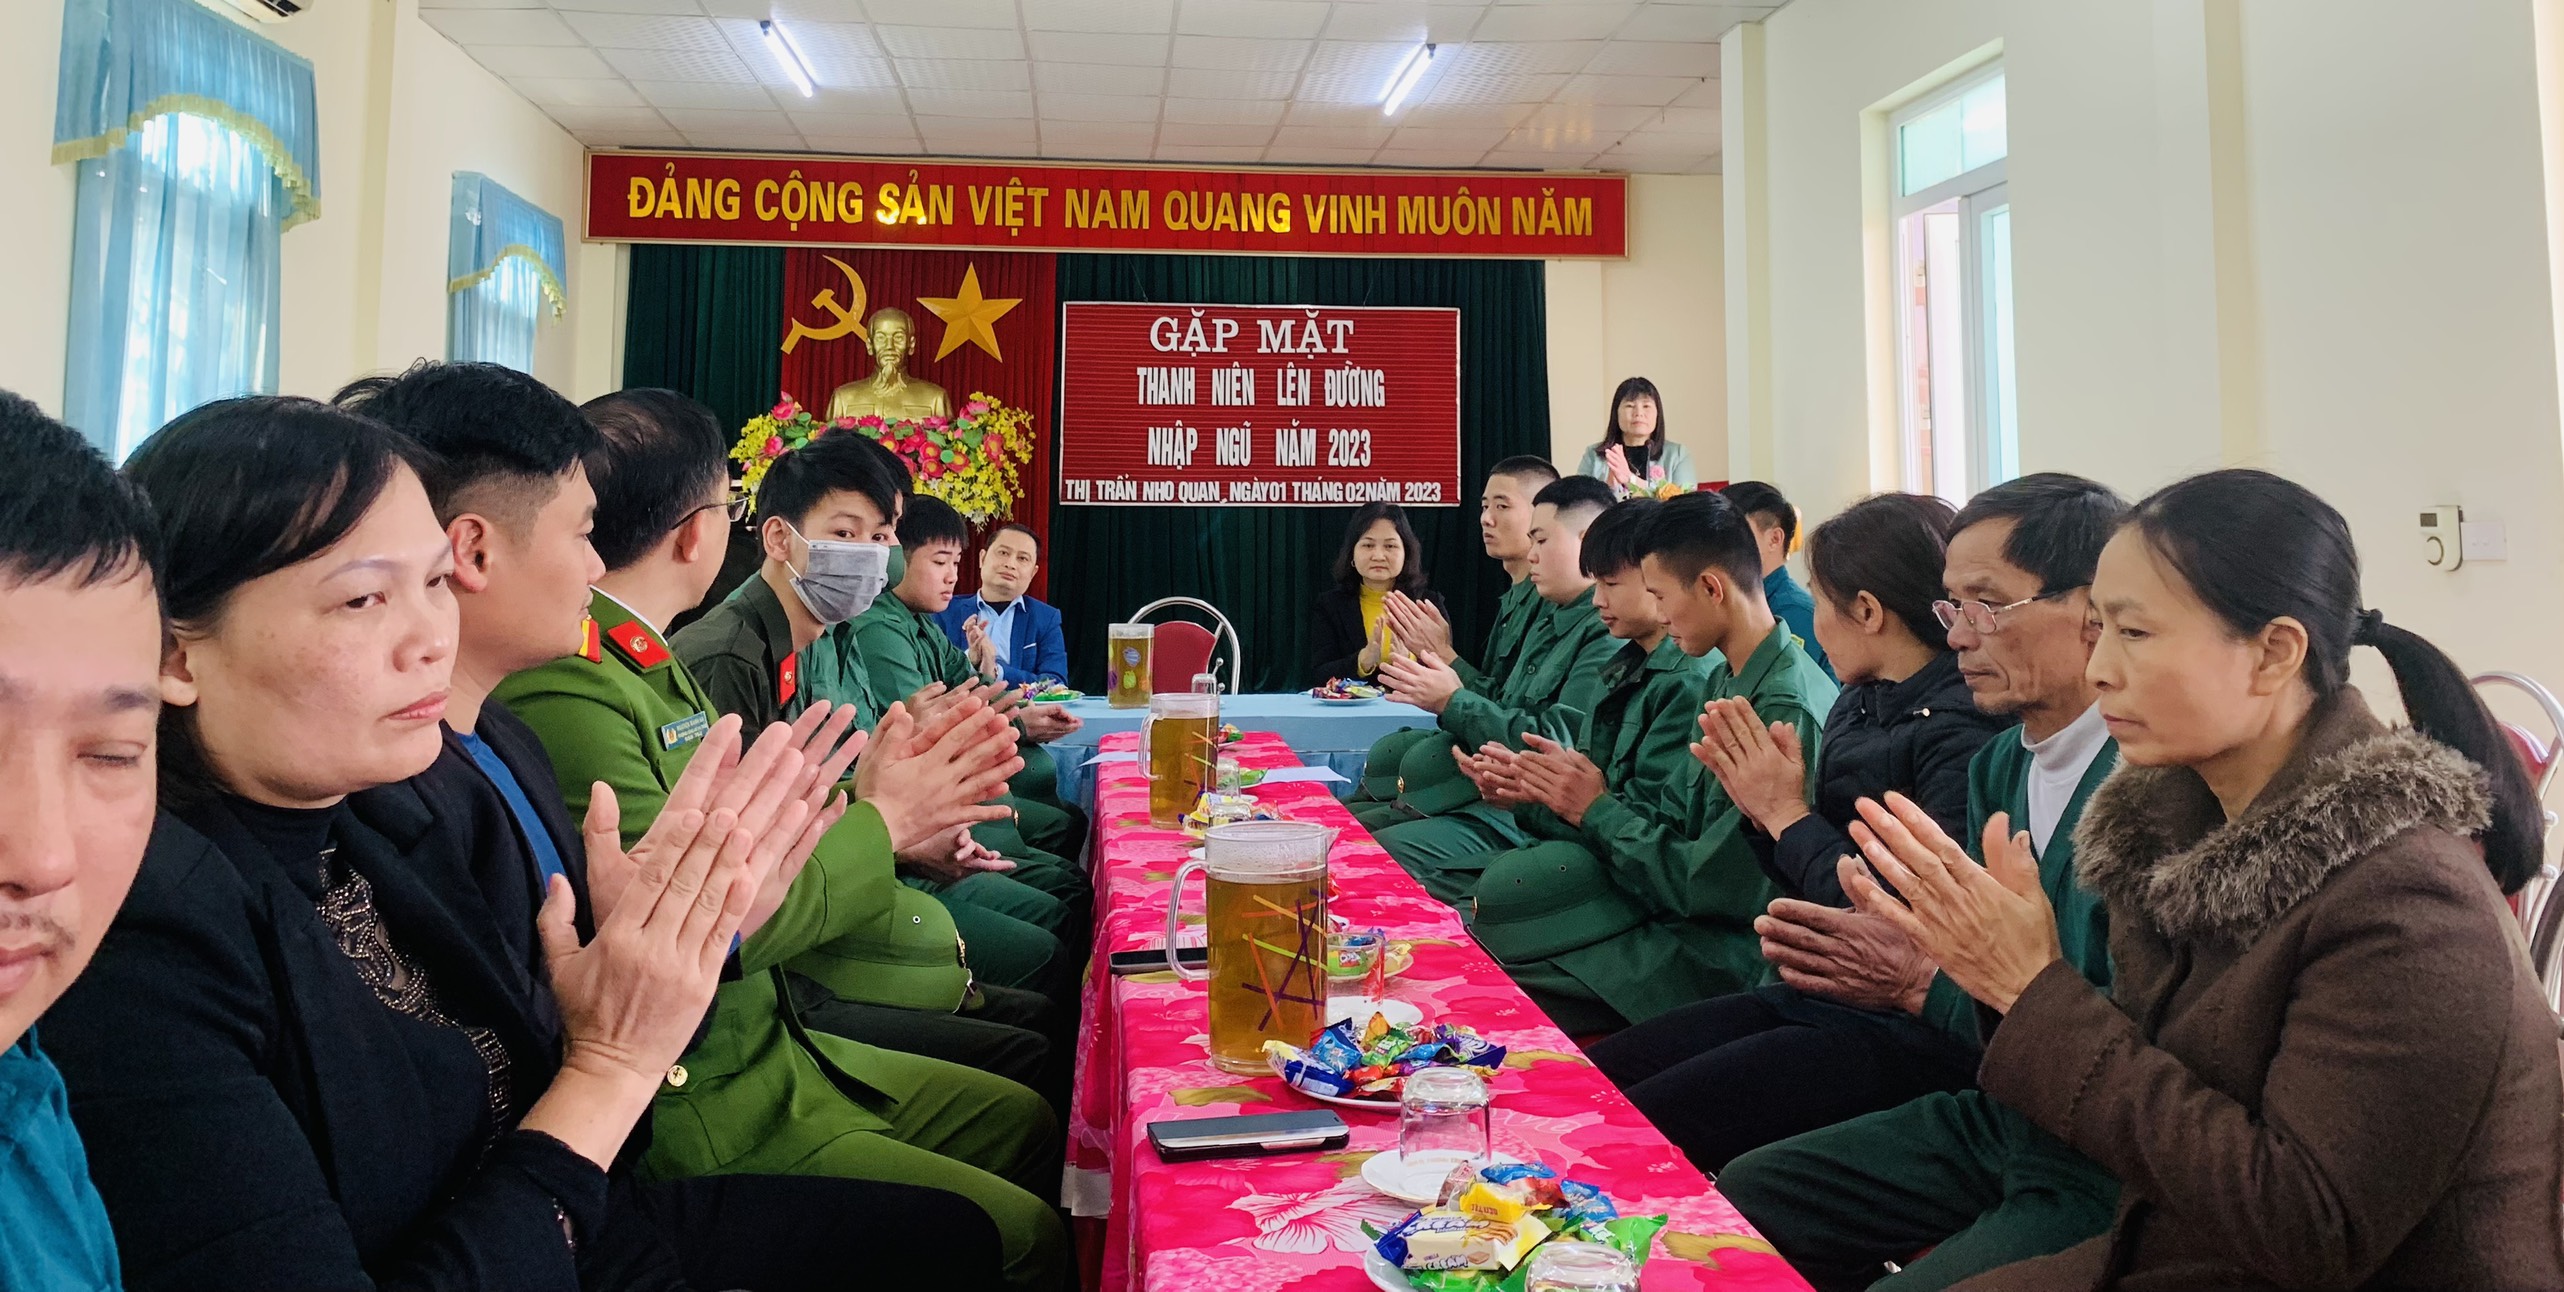 Đảng ủy, HĐND, UBND, UB.MTTQ, Hội đồng nghĩa vụ quân sự Thị trấn Nho Quan tổ chức gặp mặt, tặng quà động viên tân binh lên đường nhập ngũ